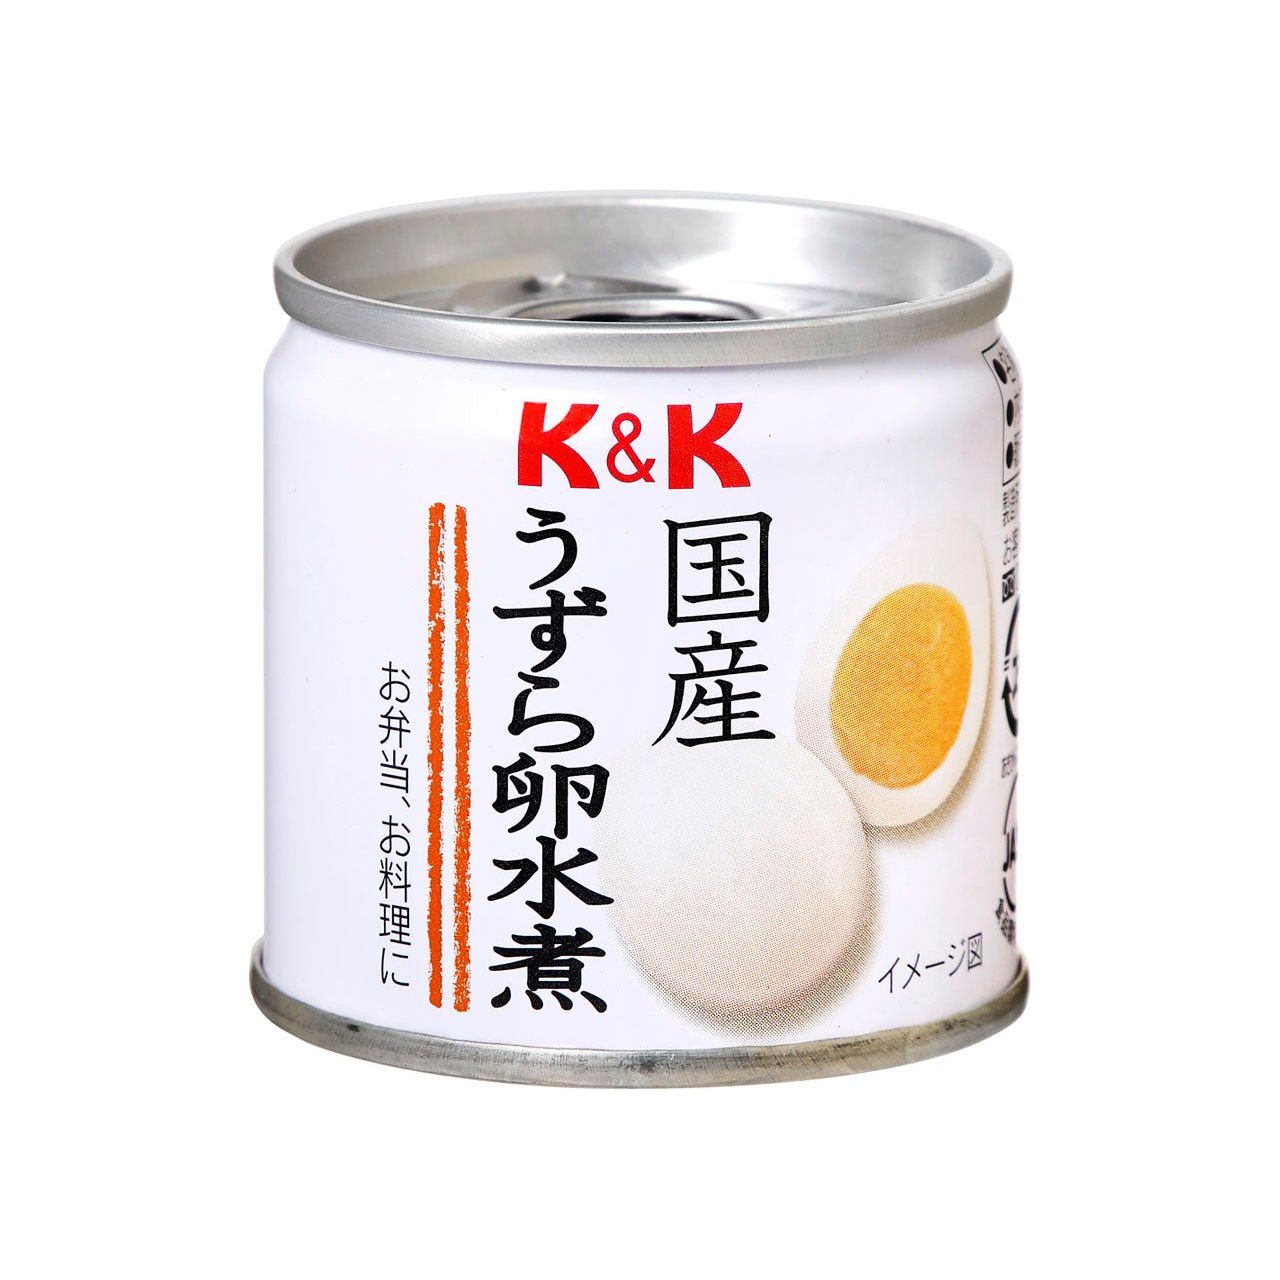 K&K 国産 うずら卵水煮